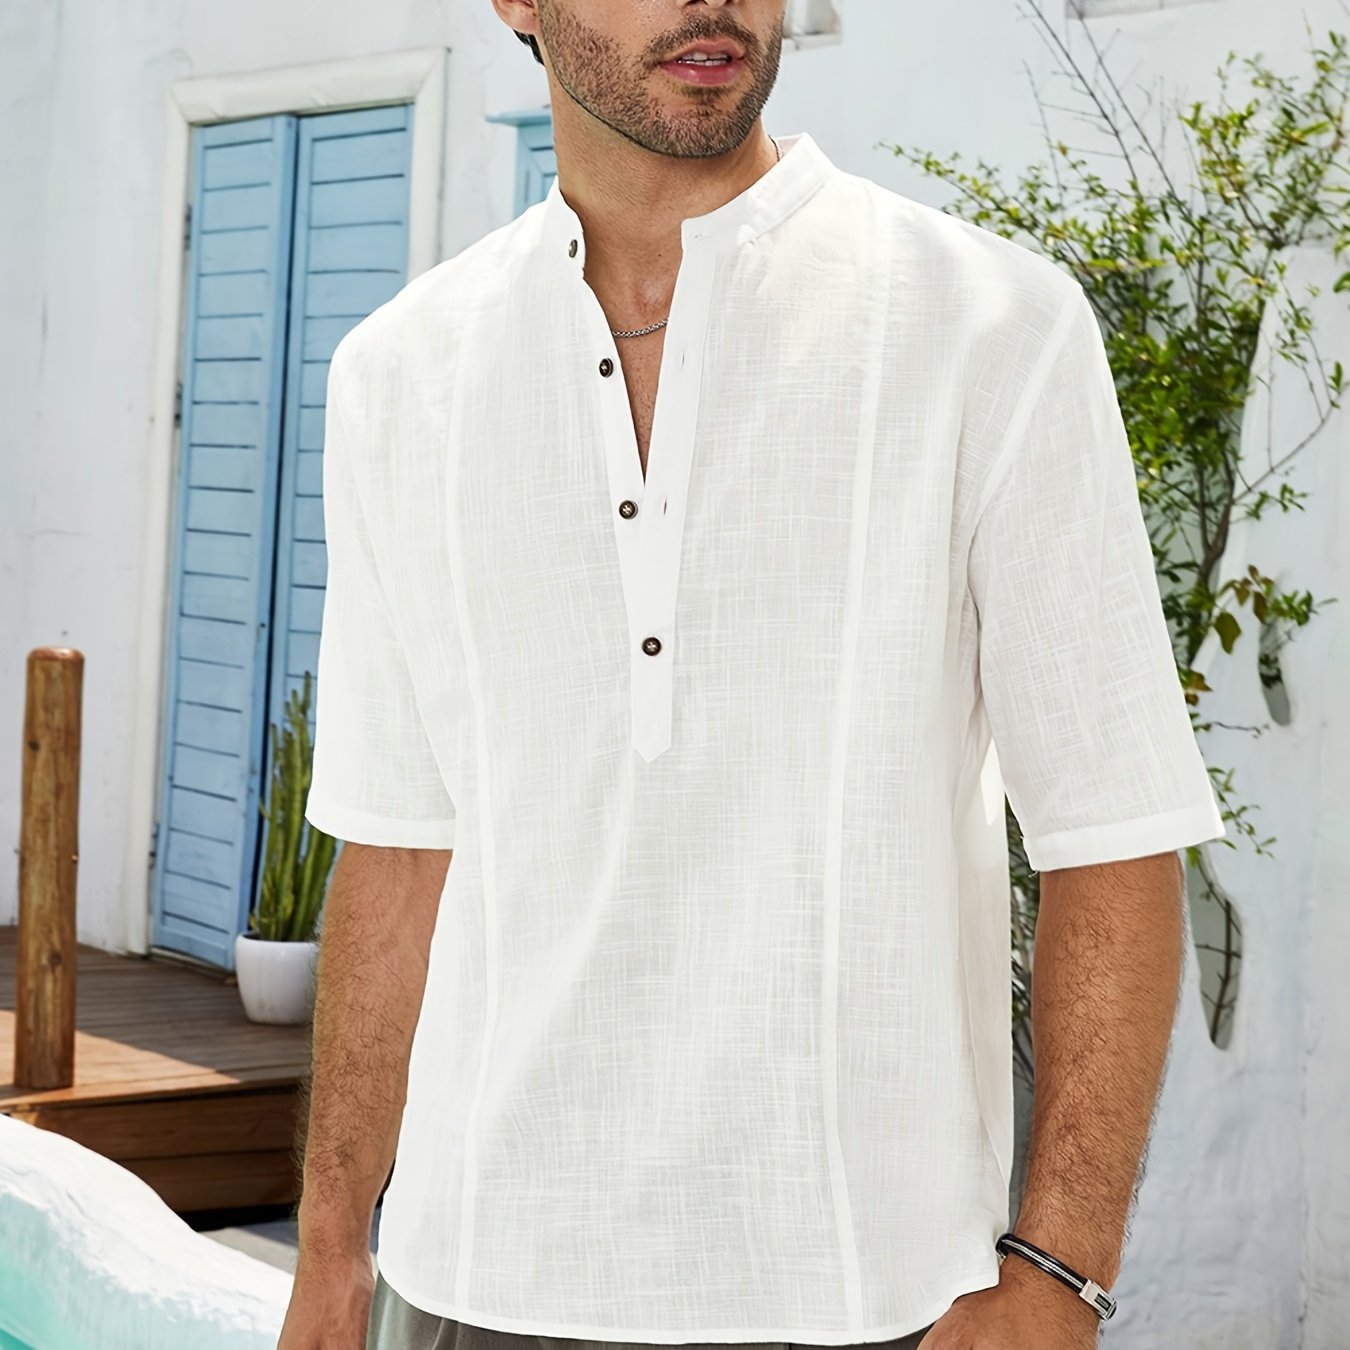 Men's Casual T Shirts Summer Short Sleeve Cotton Linen Comfy Tee Button ...